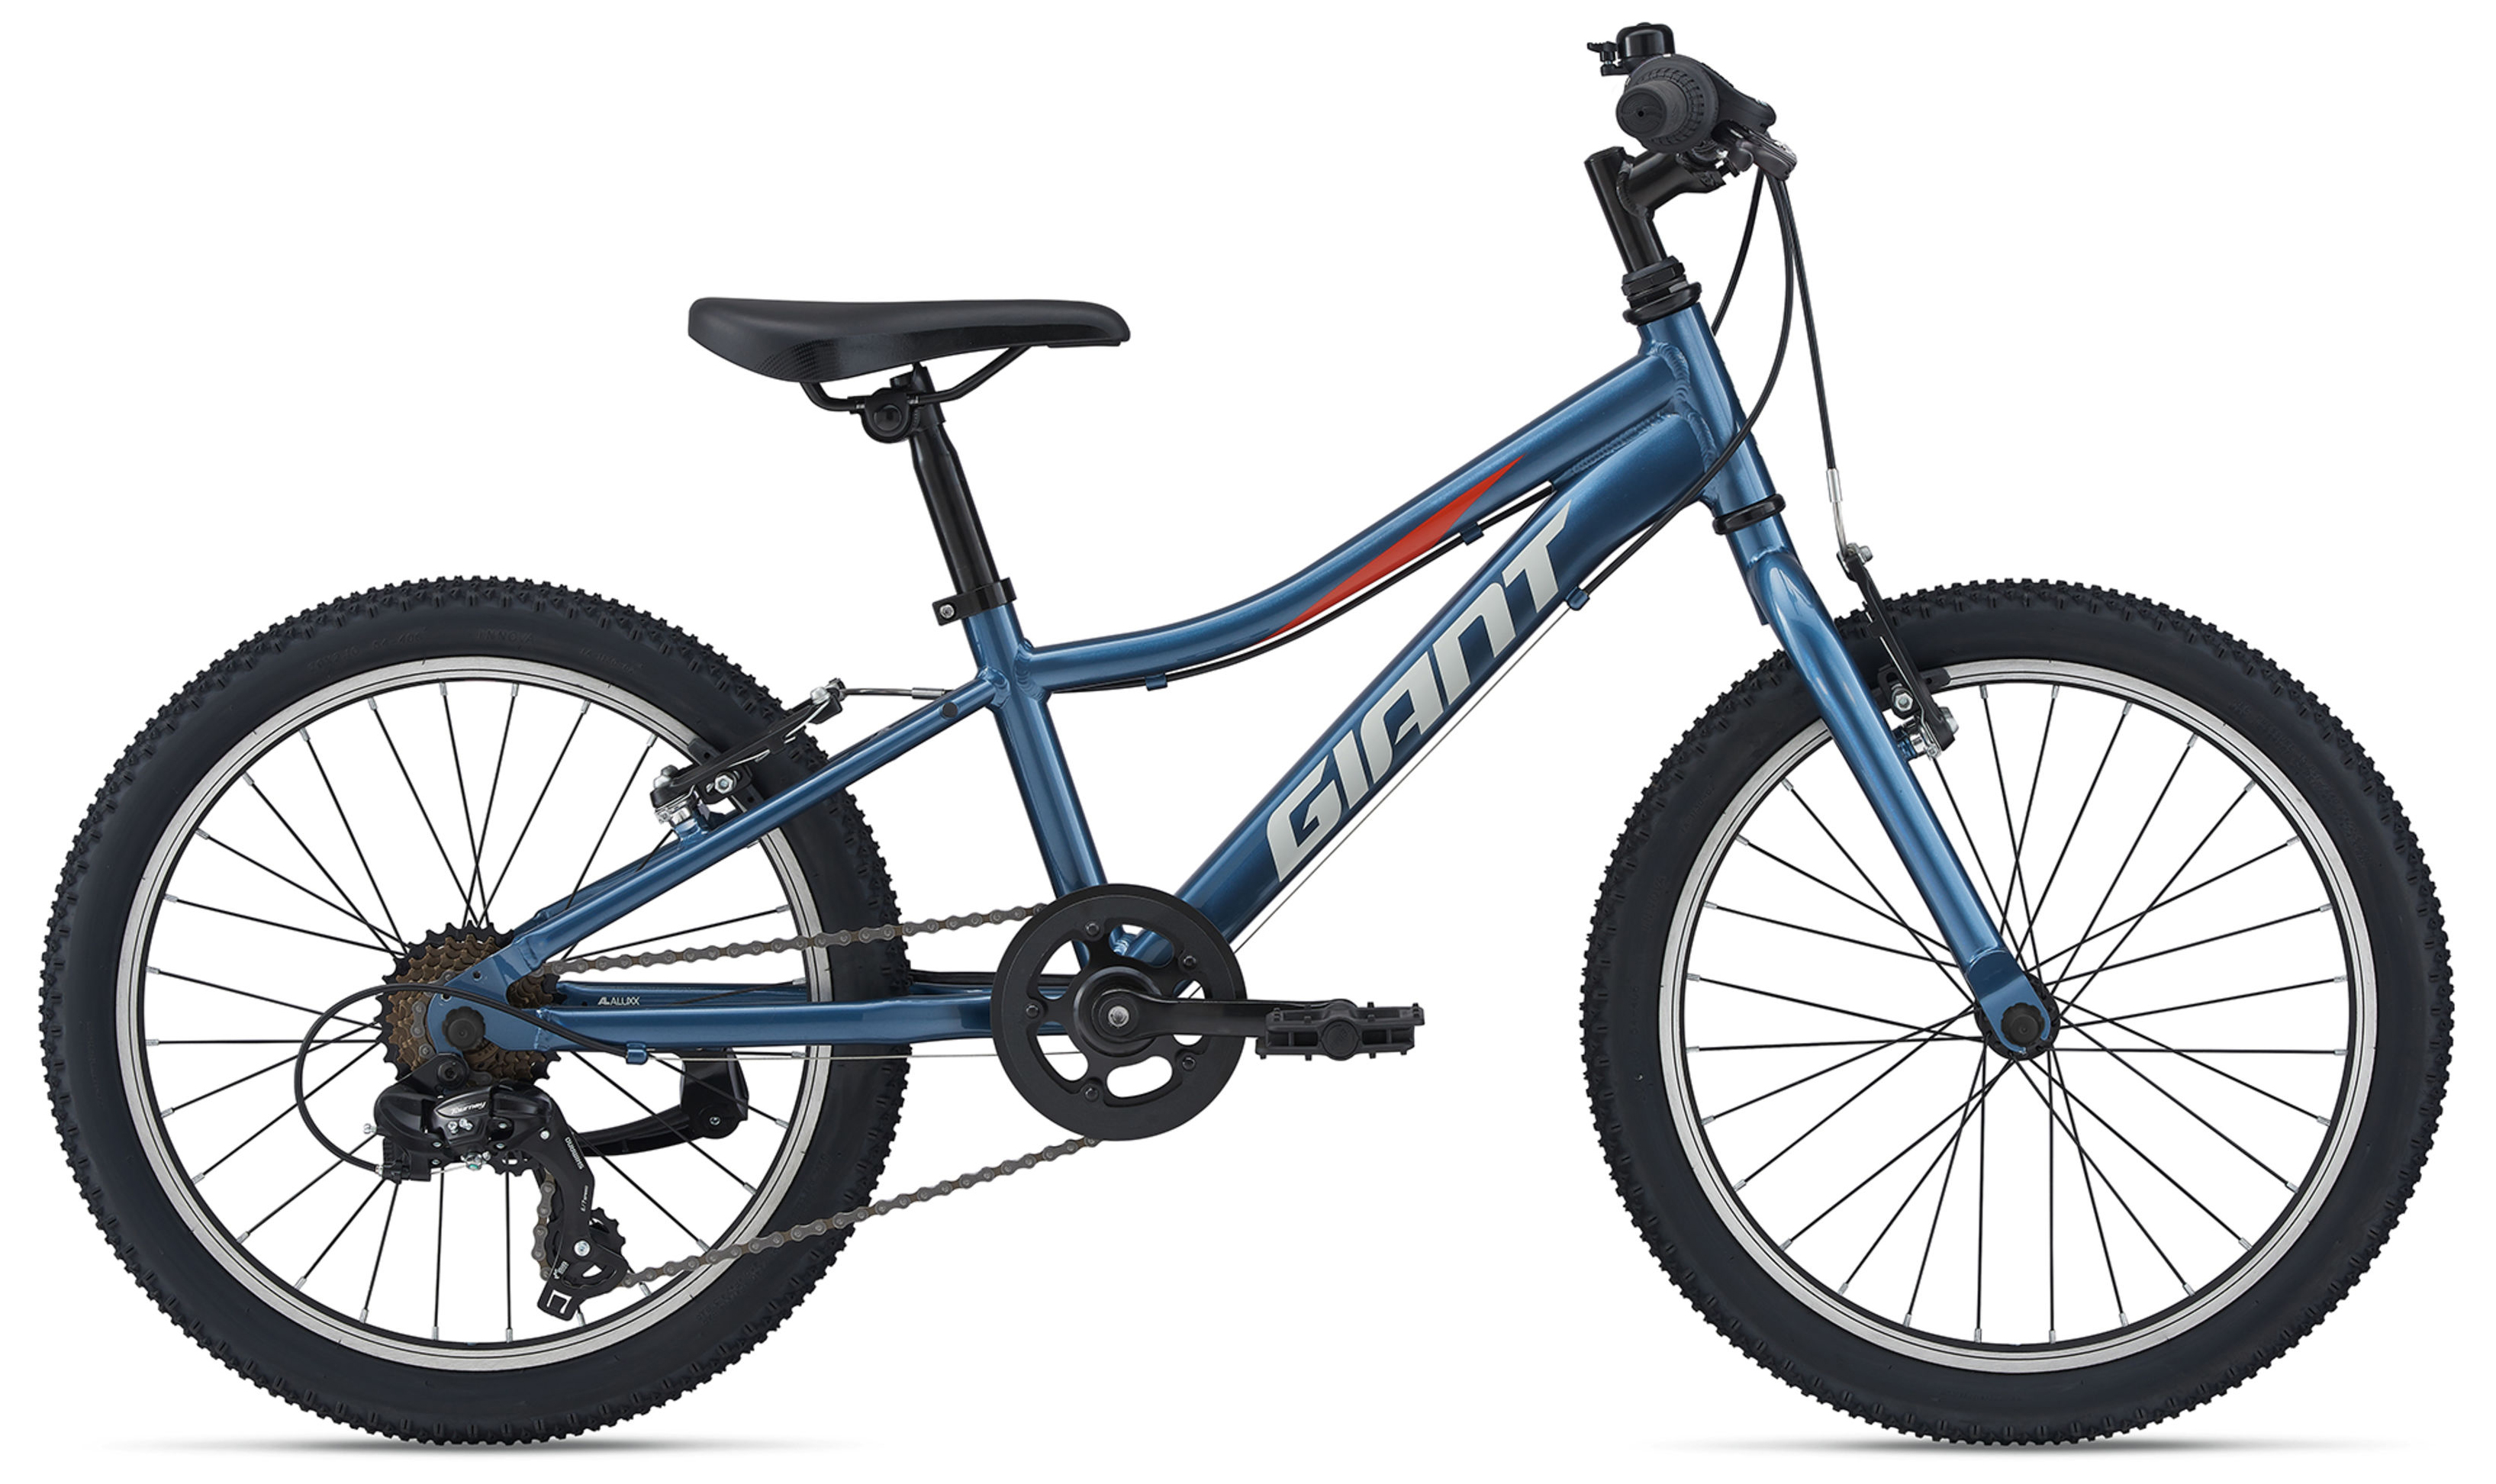  Отзывы о Детском велосипеде Giant Giant XTC Jr 20 Lite (2021) 2021